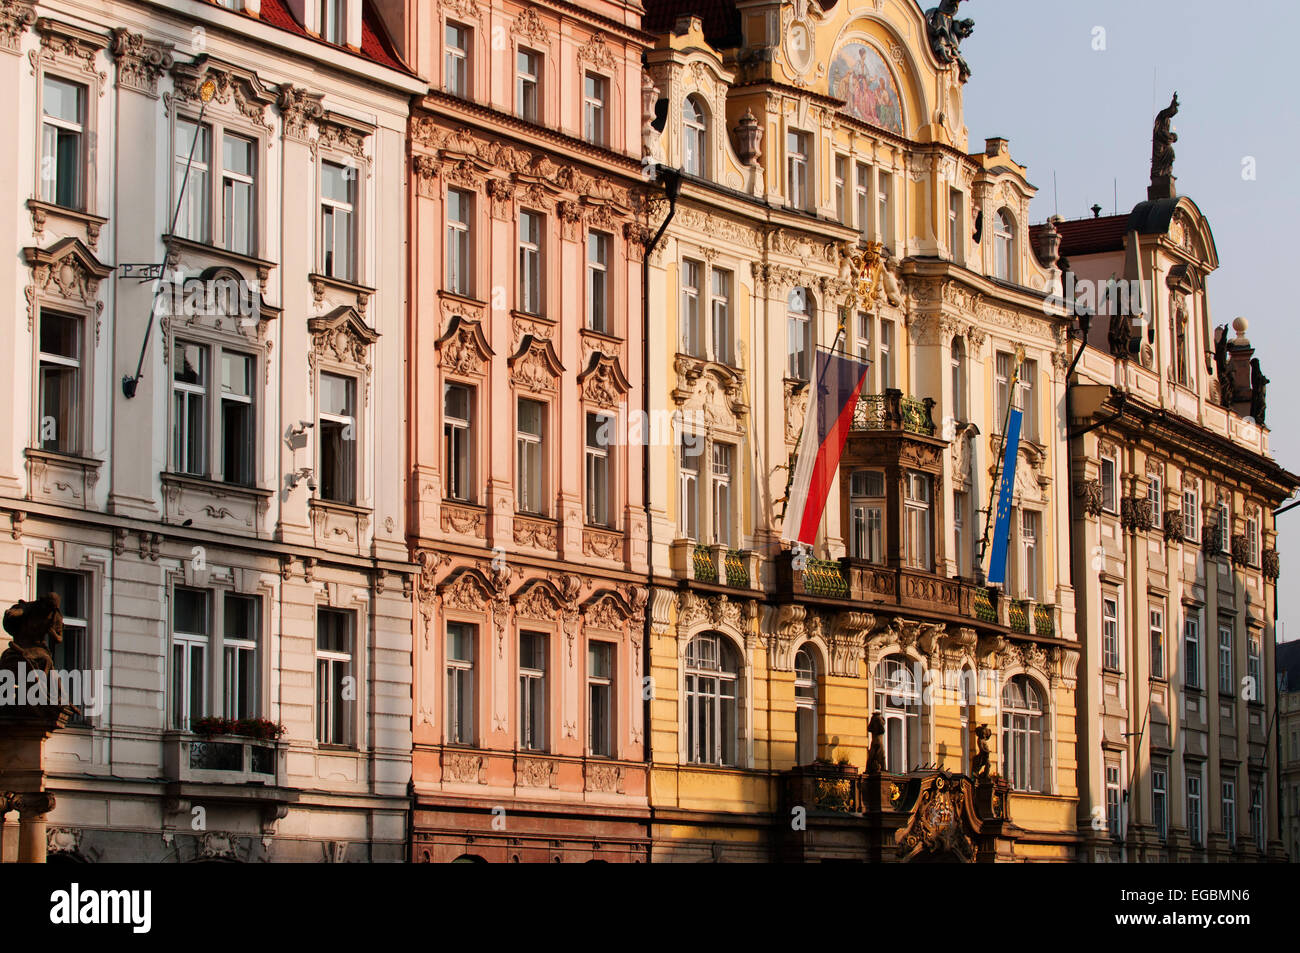 Façades de bâtiments restaurés dans la vieille ville de Prague. Banque D'Images